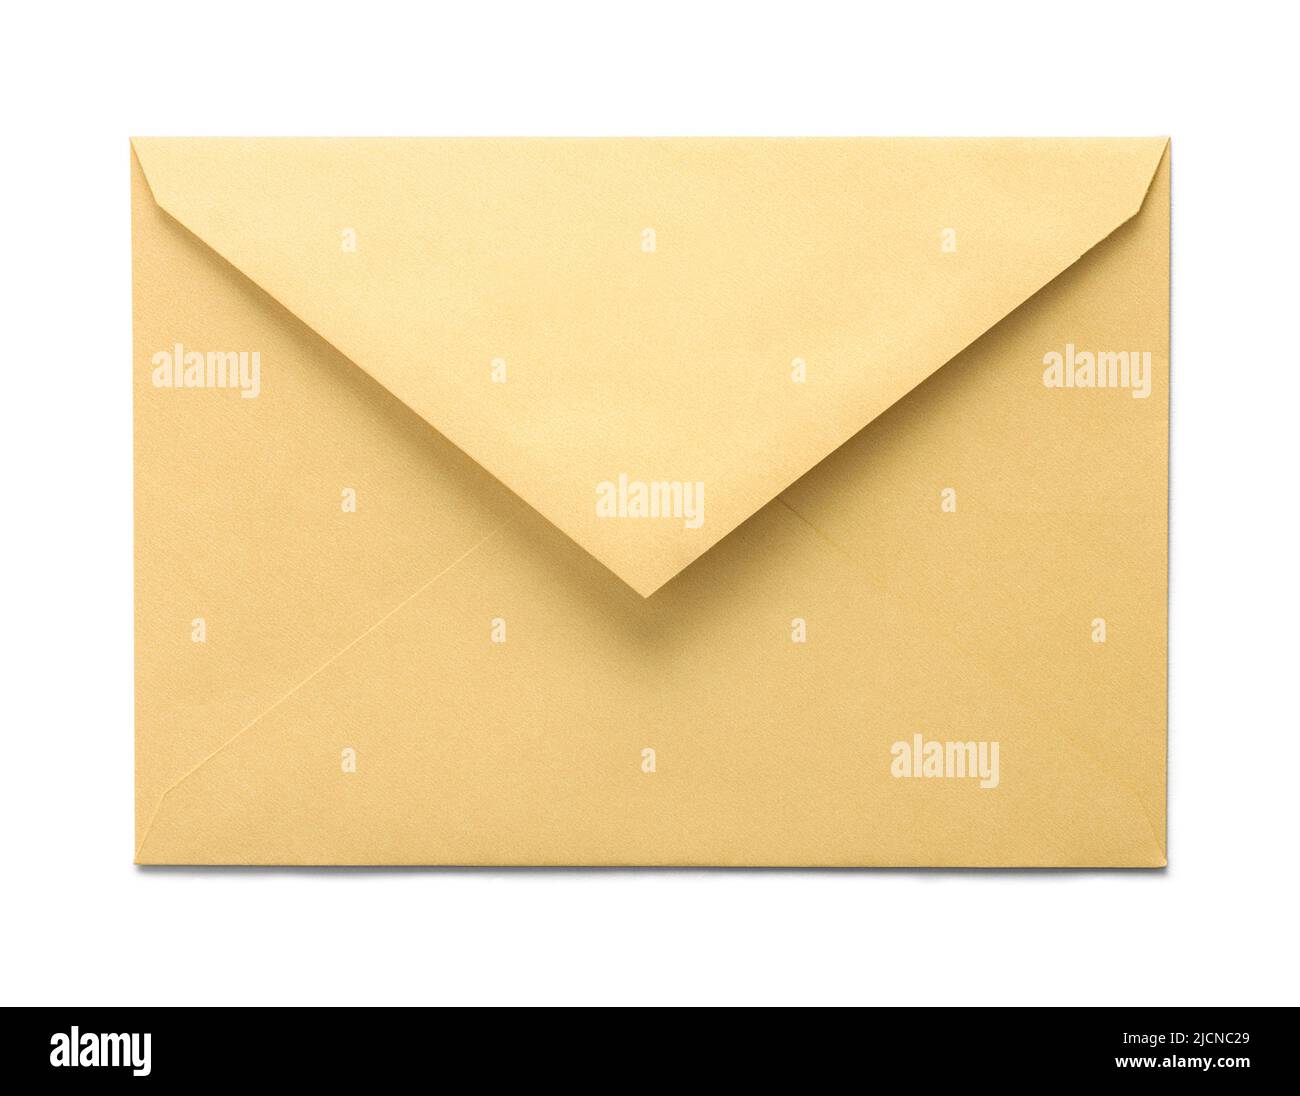 Öffnen Sie den gelben Papierumschlag, und schneiden Sie den Umschlag auf Weiß aus. Stockfoto